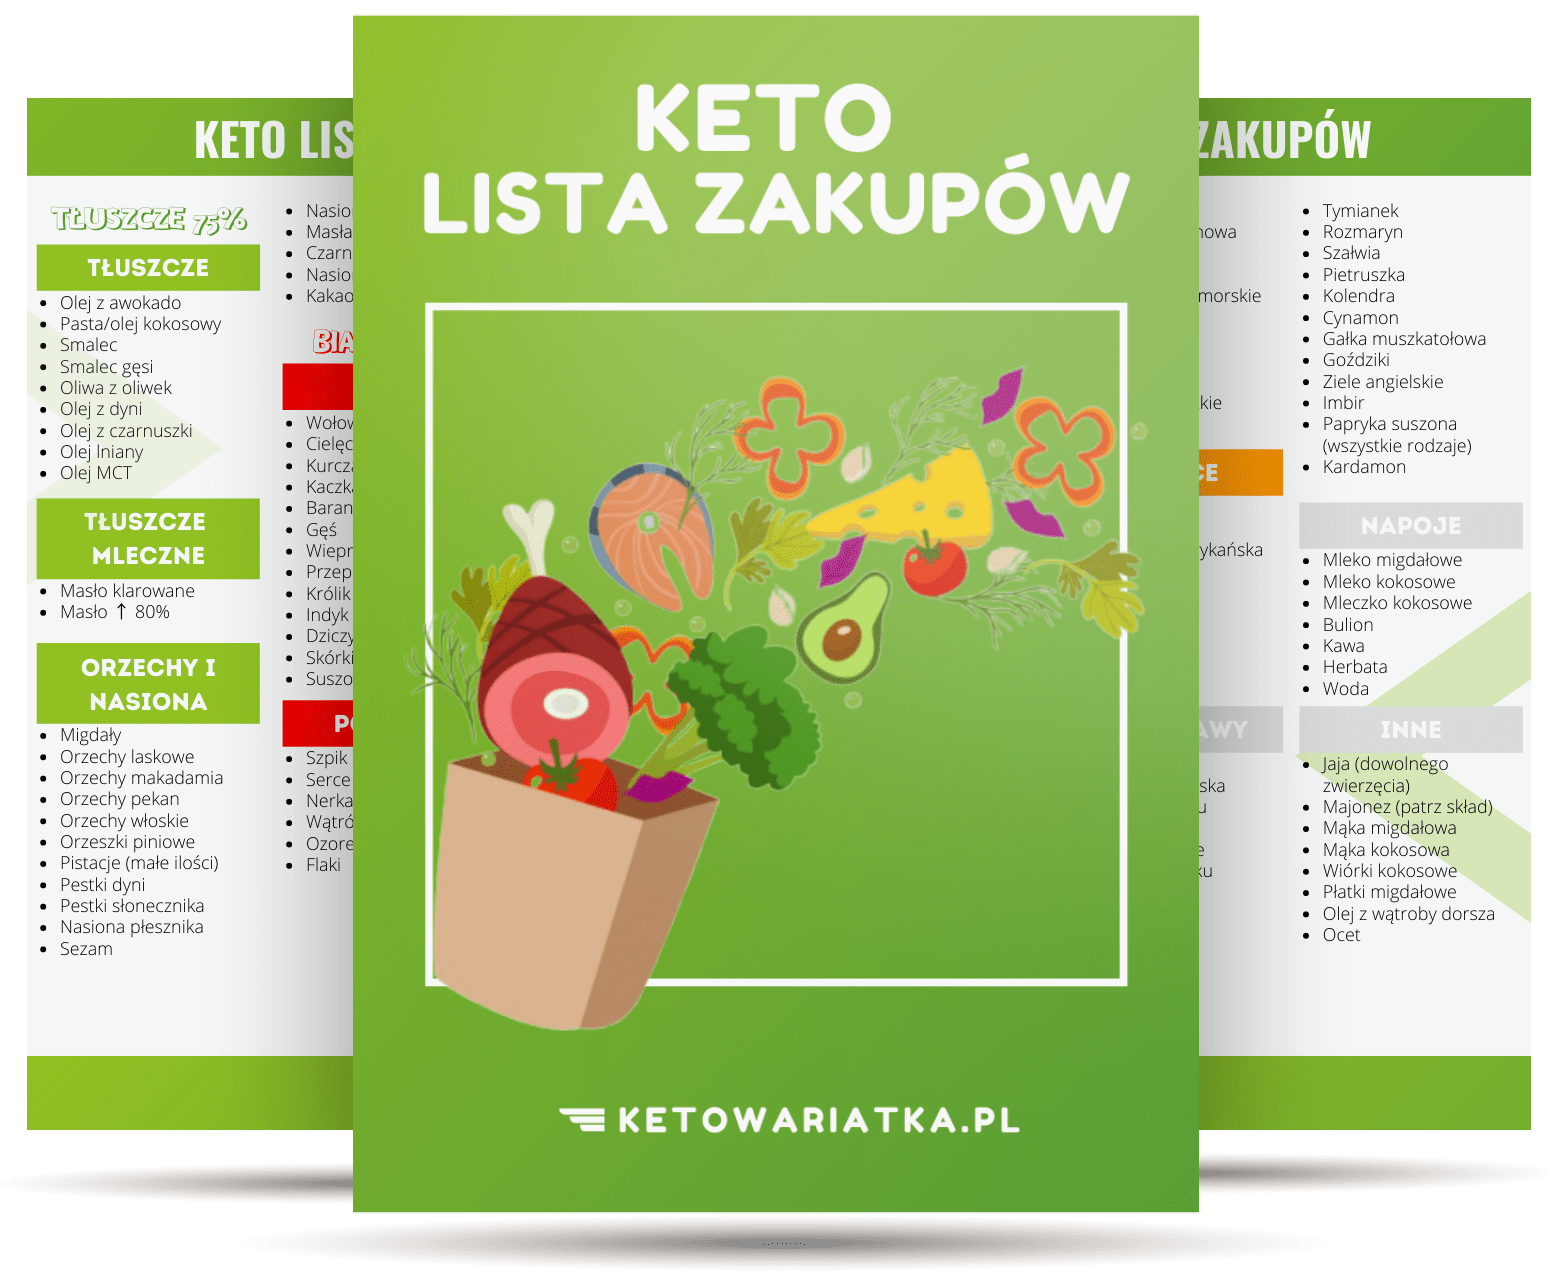 dieta ketogeniczna zasady)